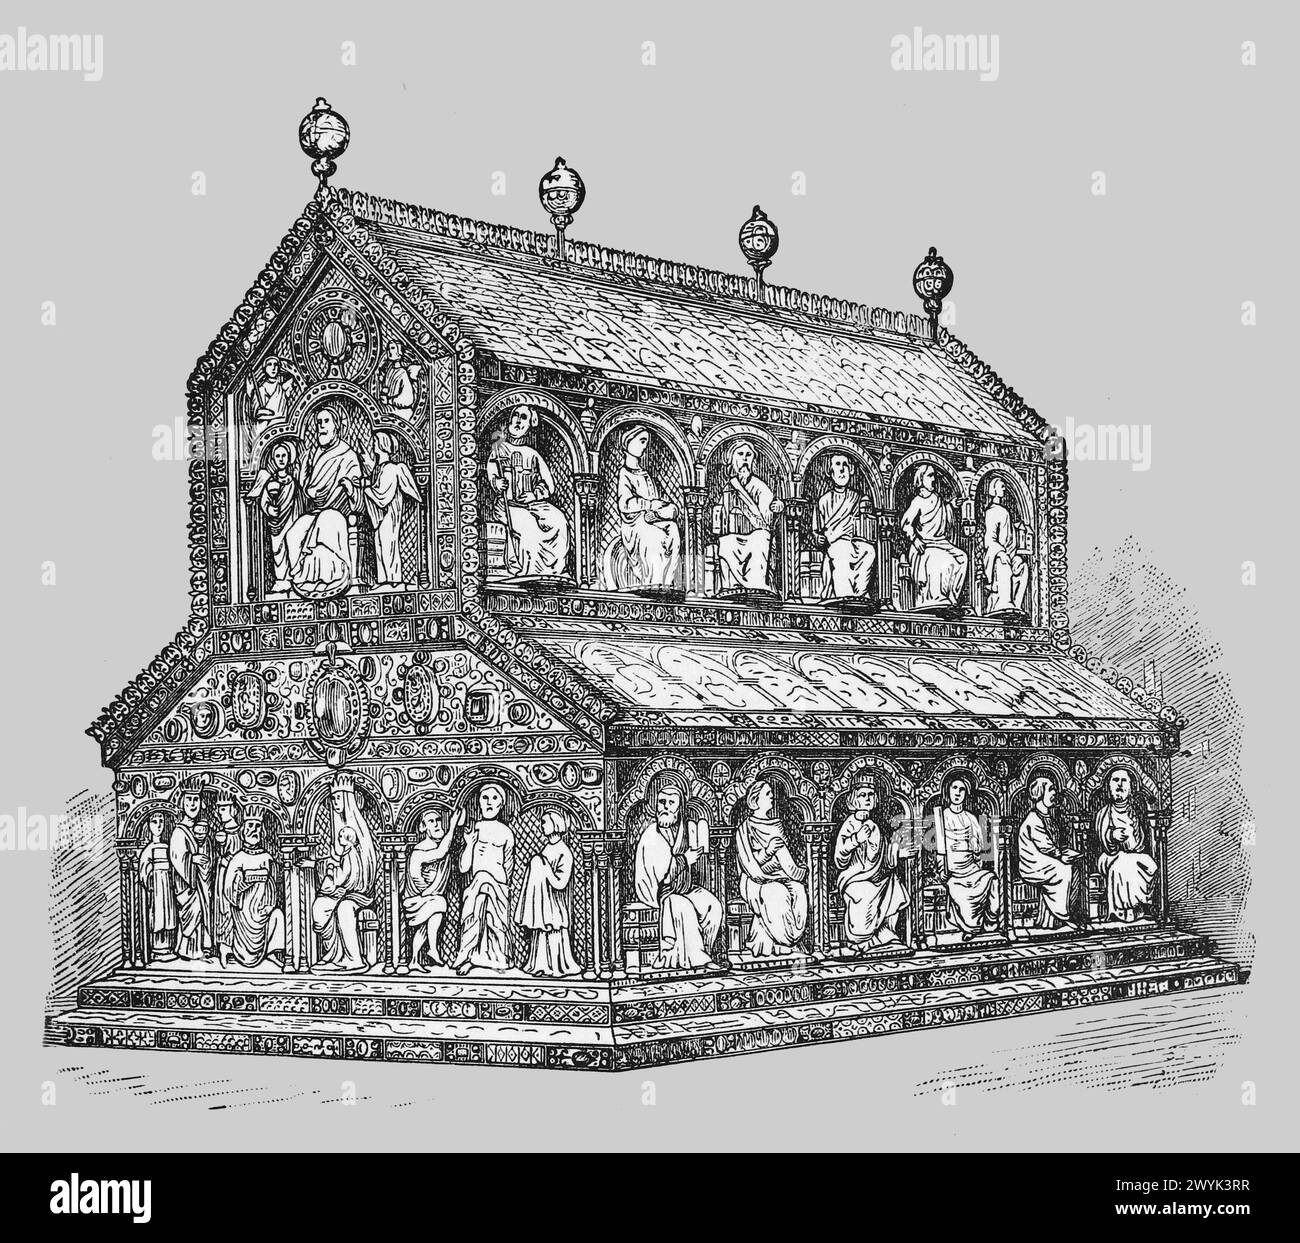 Das Heiligtum der drei Könige, Kölner Dom: Stich aus dem Leben der Heiligen (1. November) von Reverend Sabin Baring-Gould, veröffentlicht 1898 Stockfoto